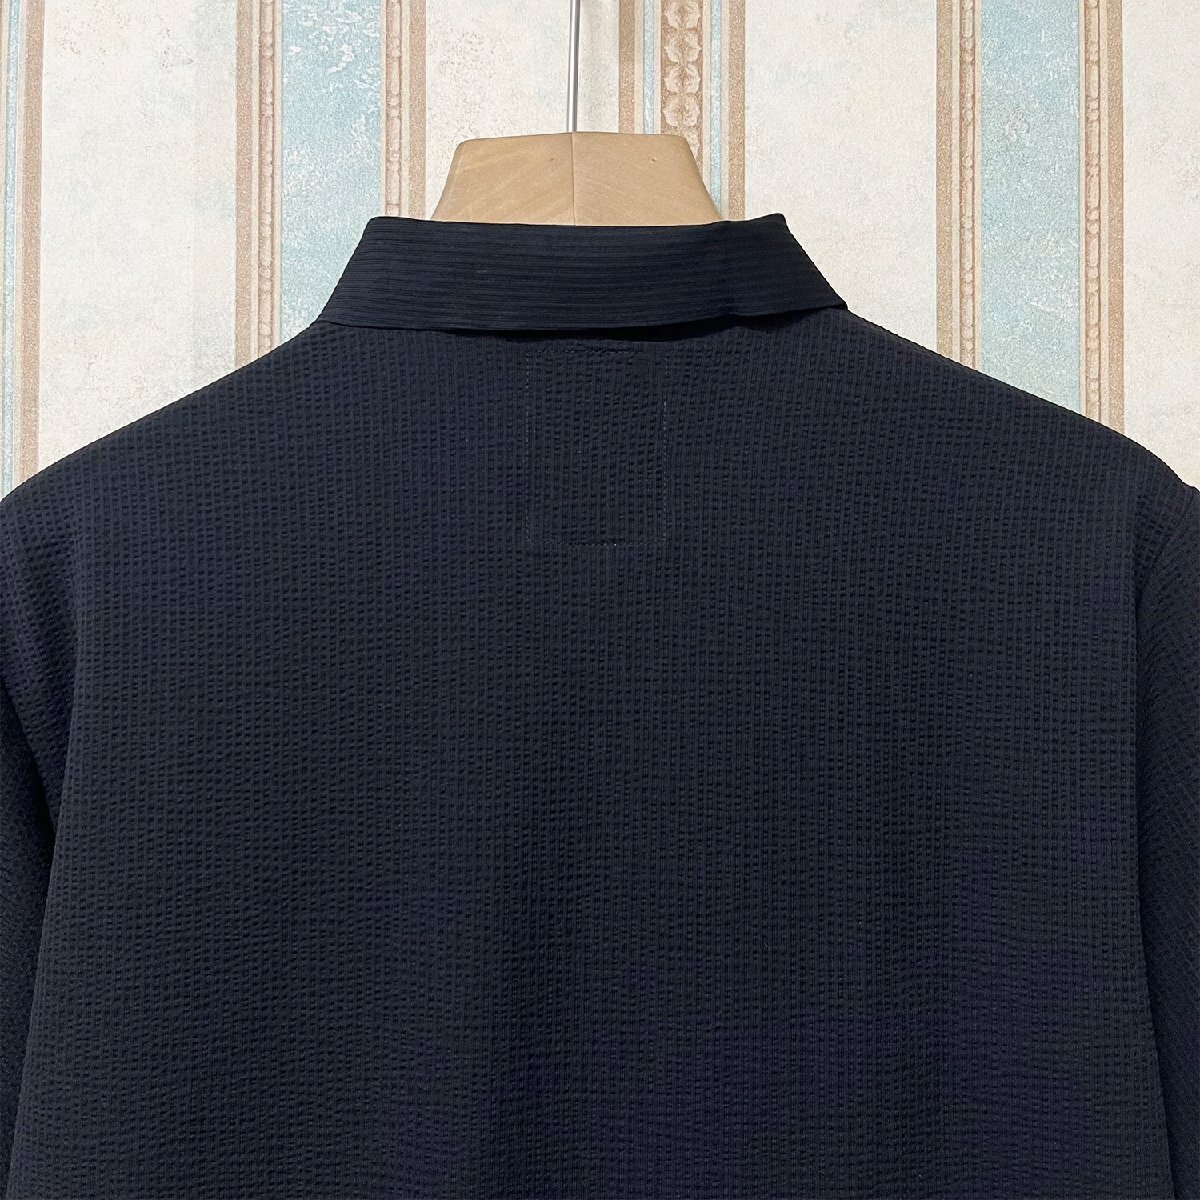 絶賛 定価3万 FRANKLIN MUSK・アメリカ・ニューヨーク発 ポロシャツ 高品質シルク/コットン混 薄手 速乾 涼しい 洗練 ビジネス サイズ2の画像4